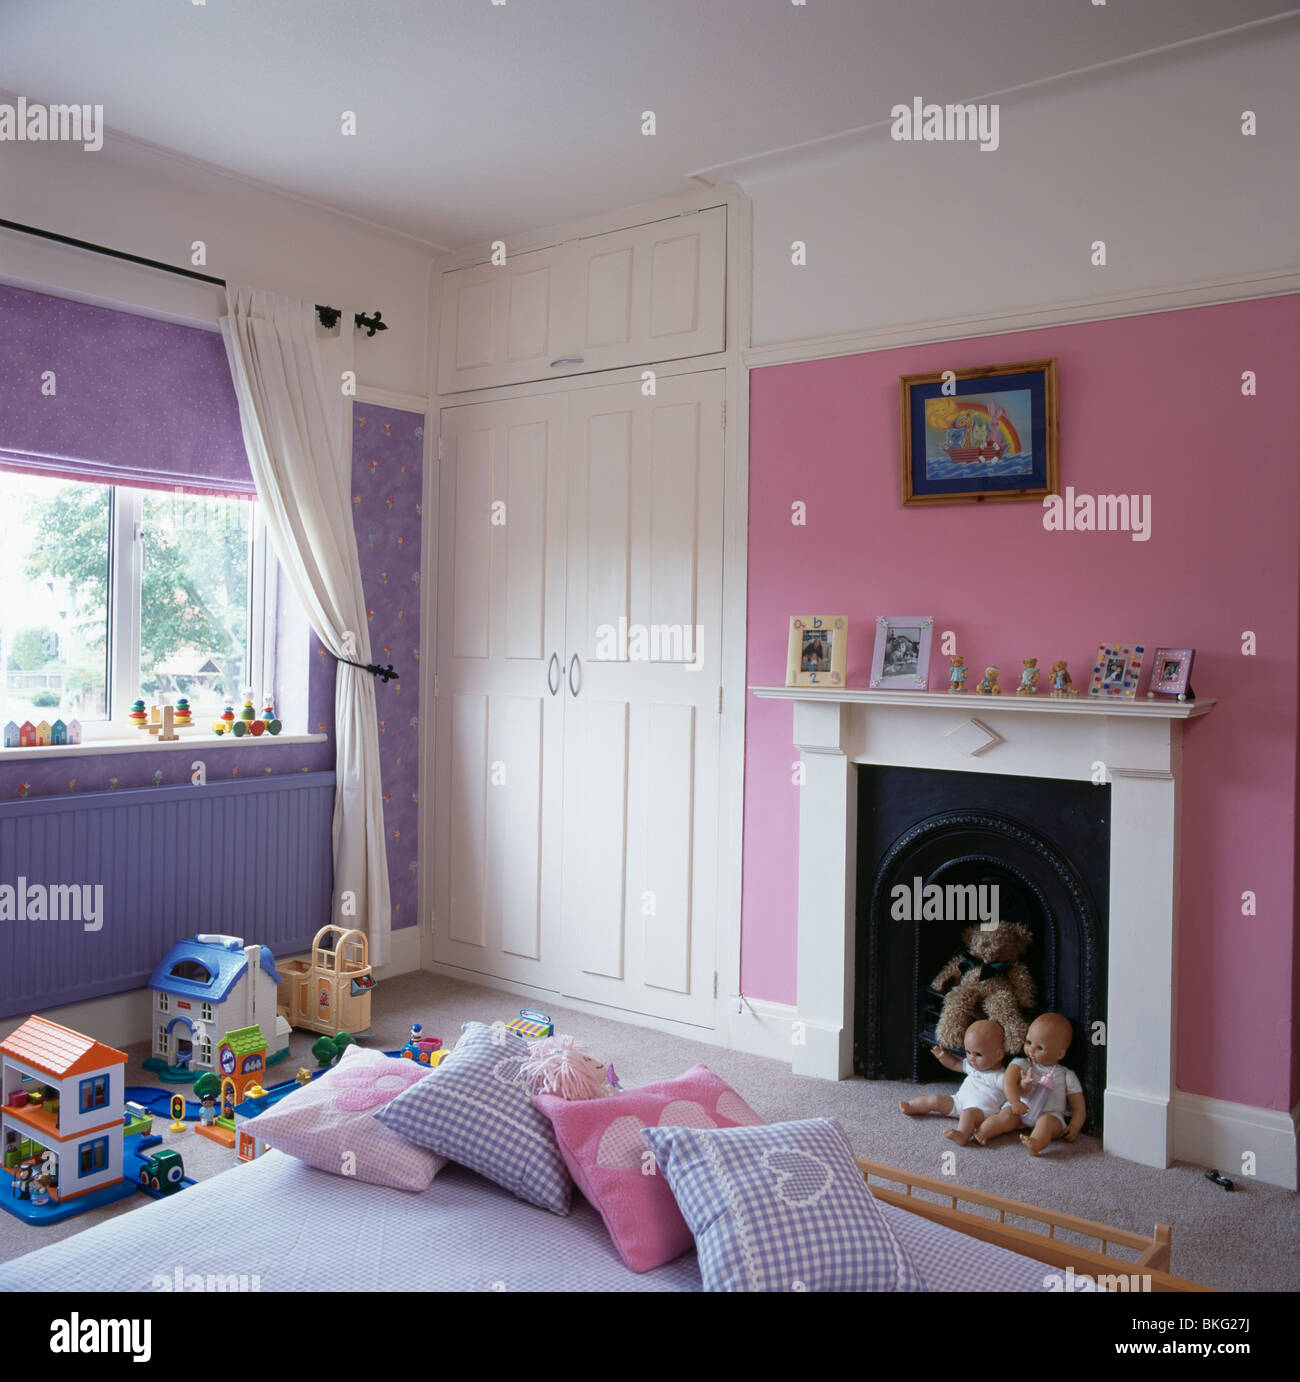 Rosa und lila Kinderzimmer mit weißer Einbauschrank und weißen Kamin  Stockfotografie - Alamy